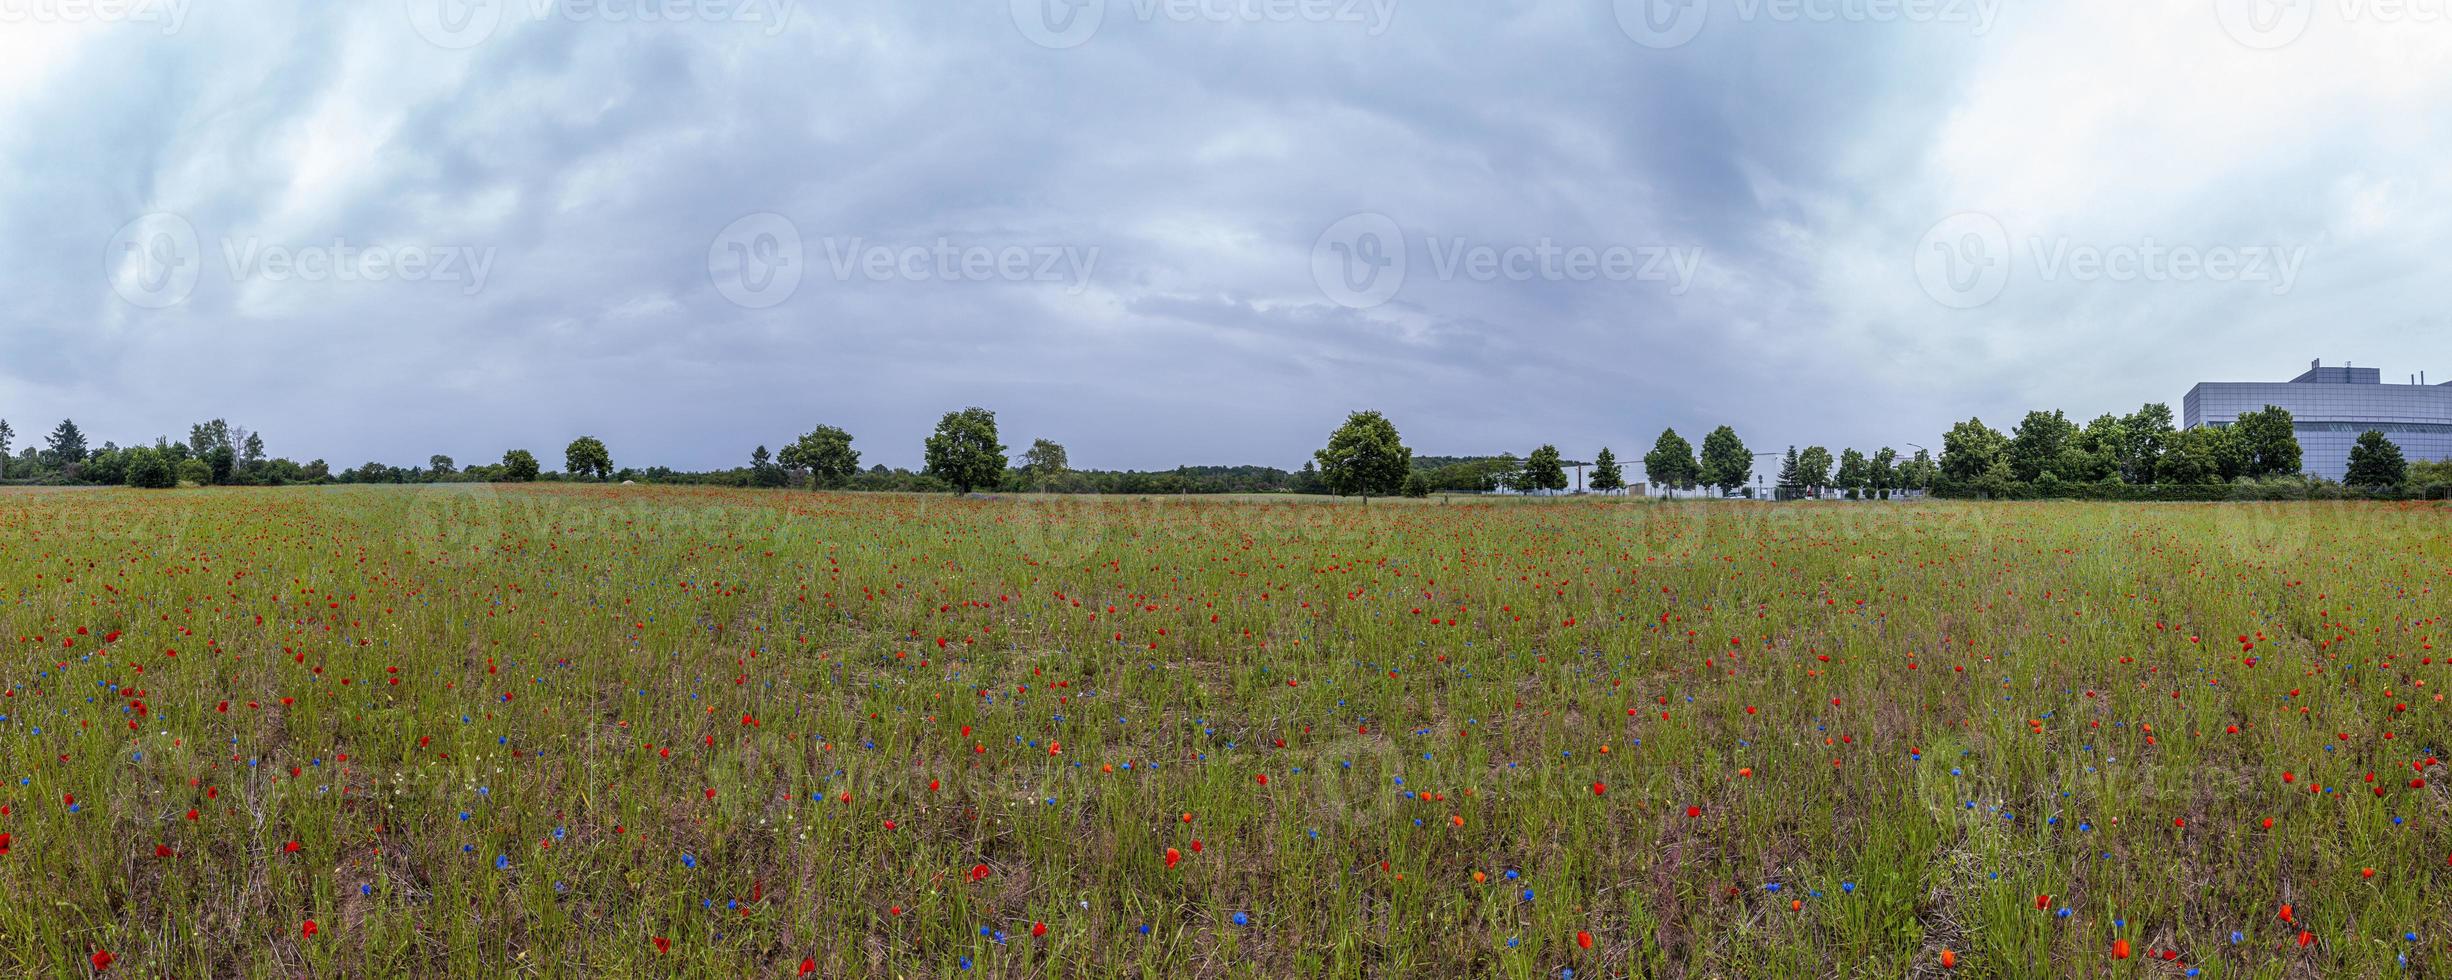 vue panoramique sur le champ de fleurs colorées au printemps photo